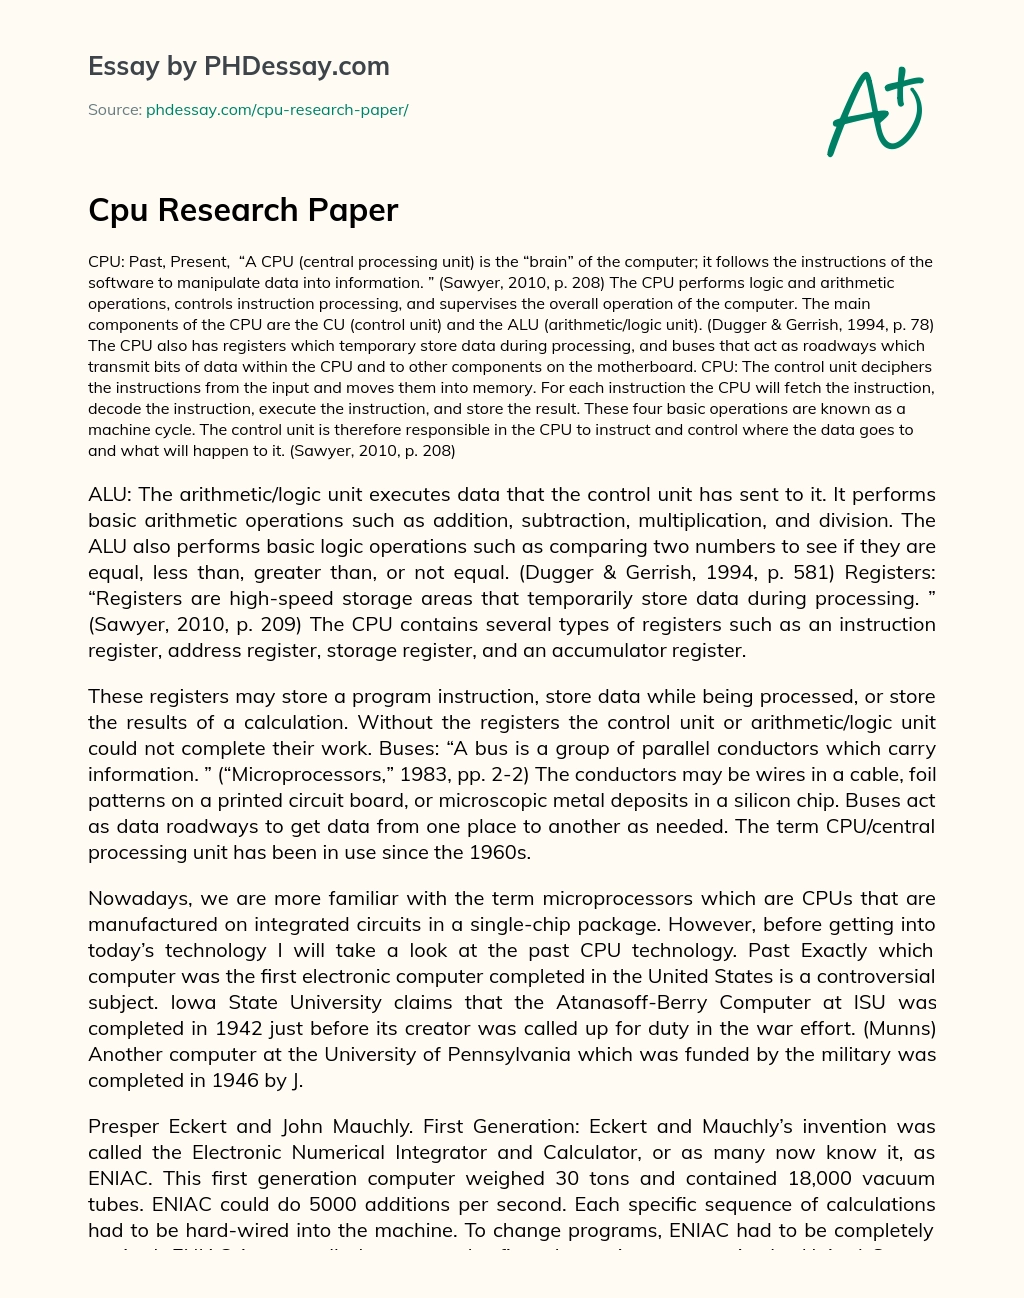 Cpu Research Paper essay